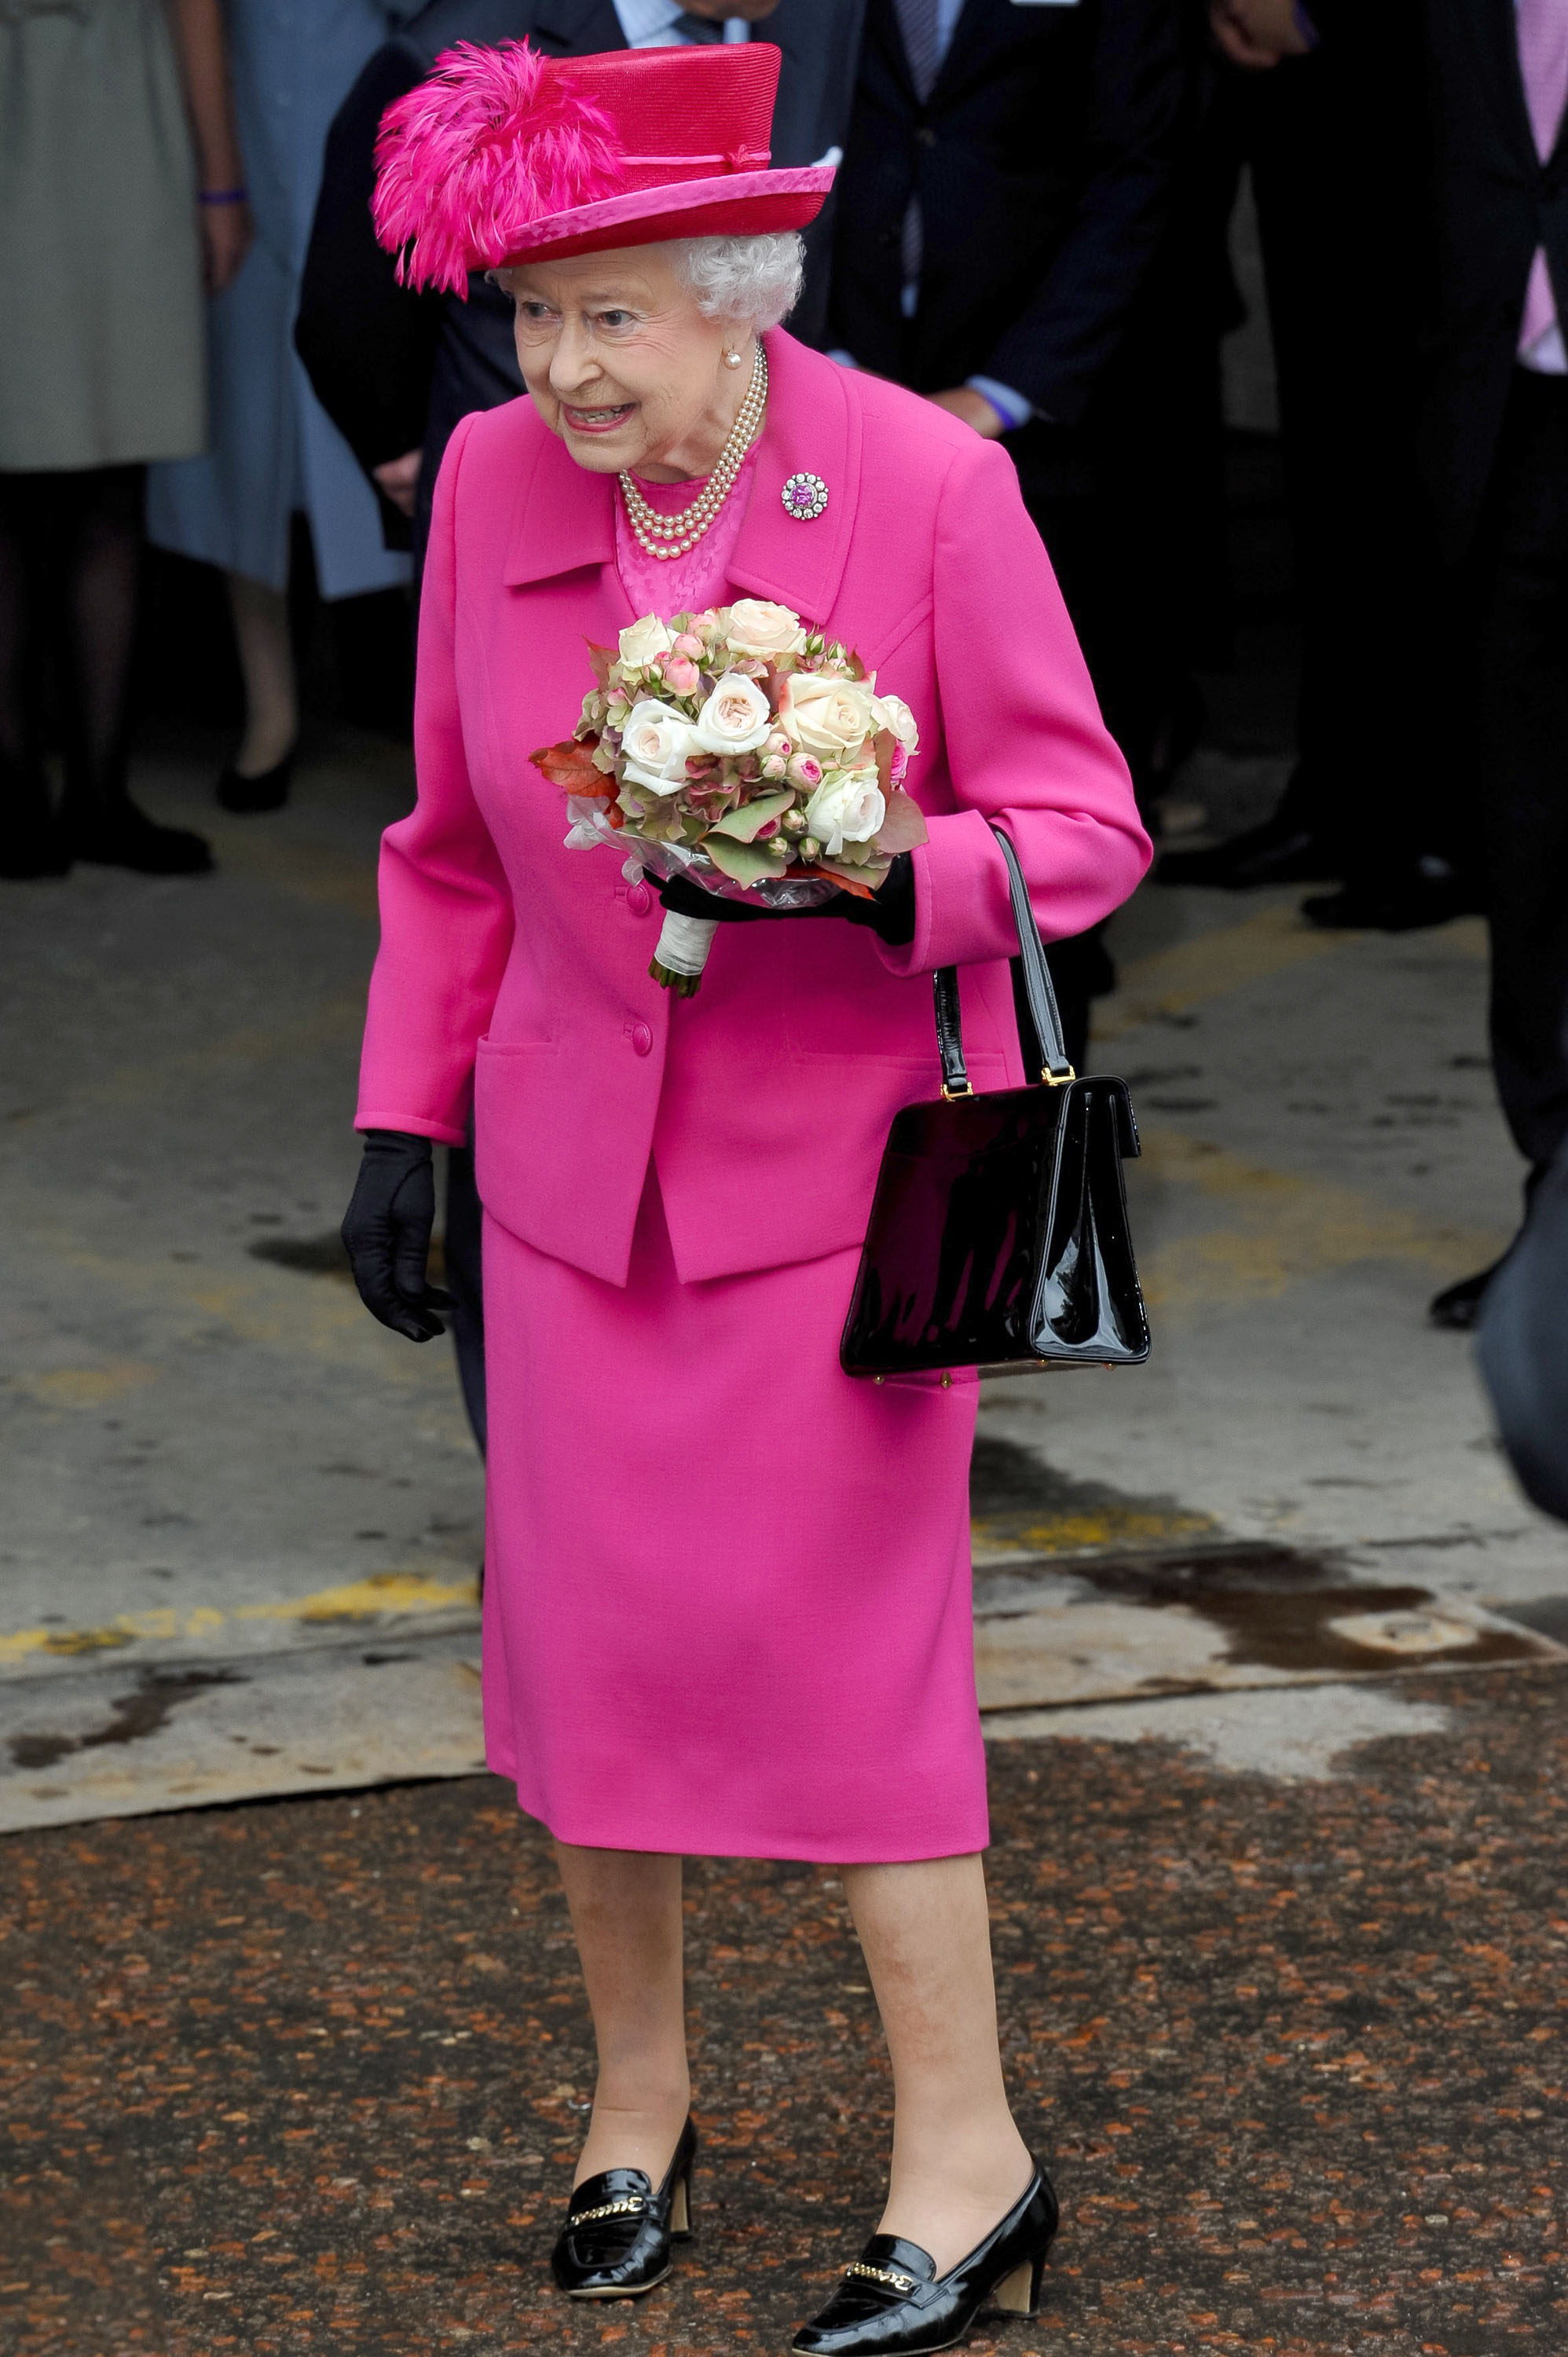 Royal Fuggerday: The Queen